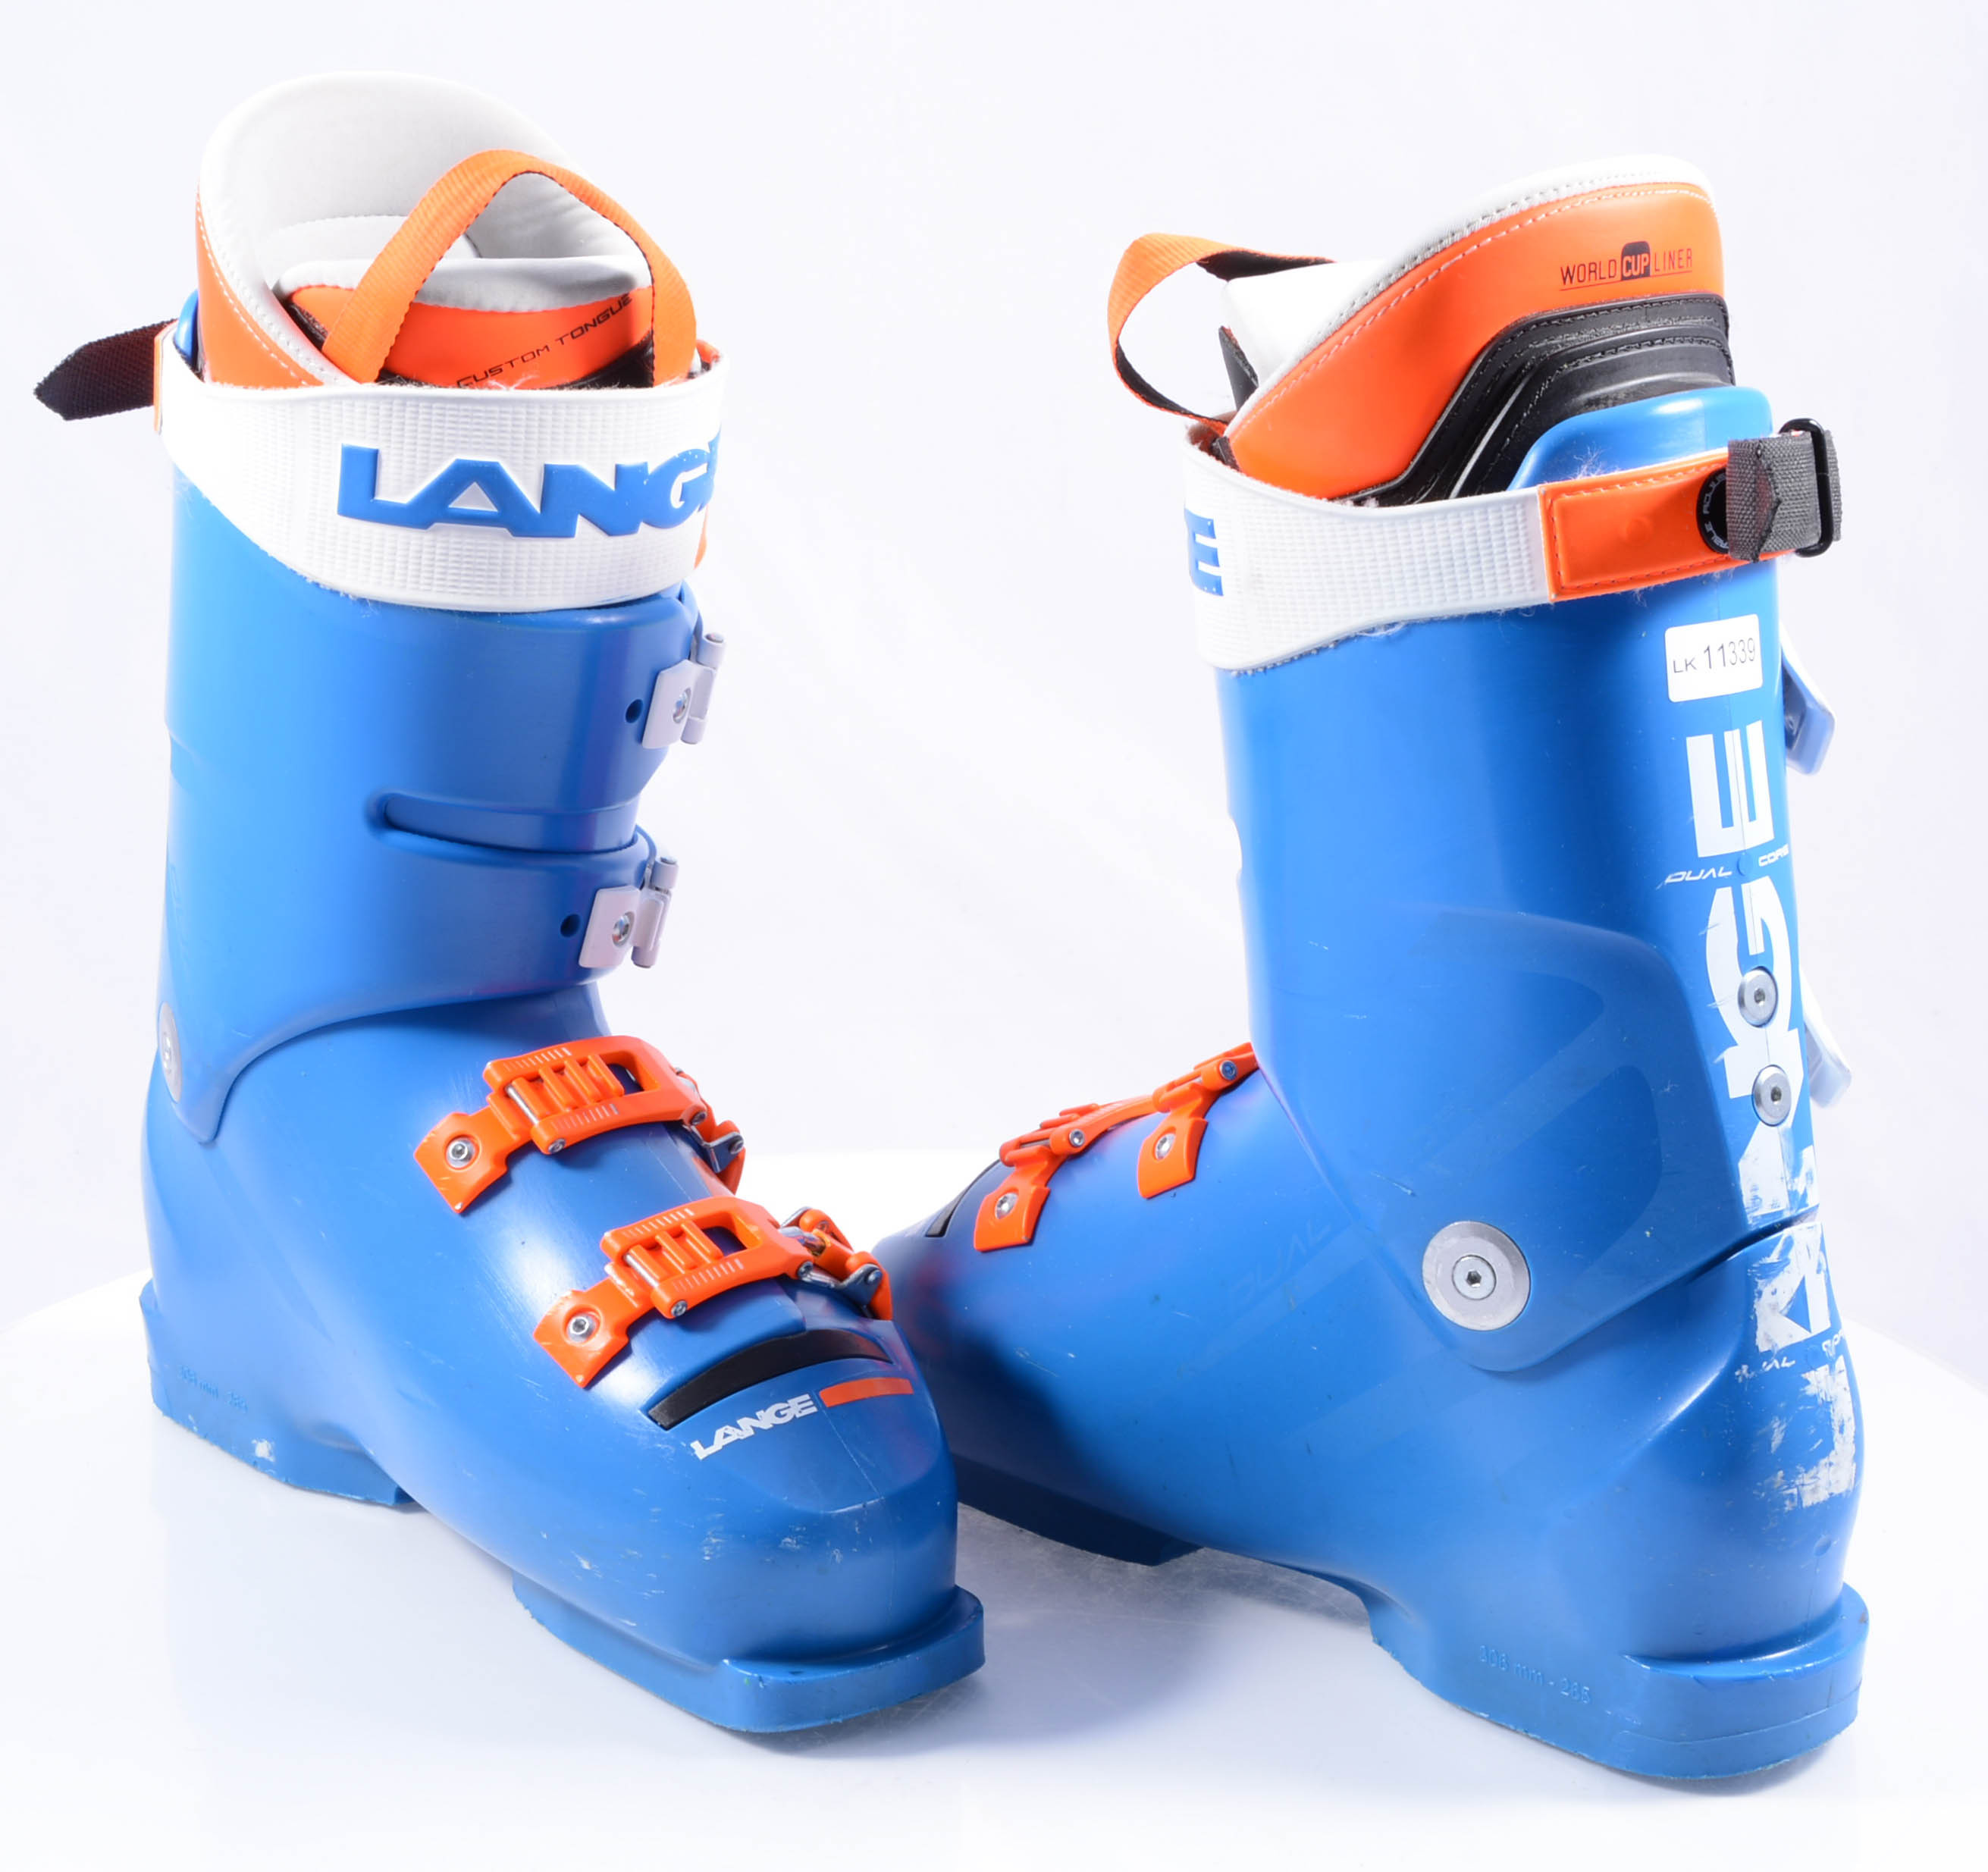 Paar Voetzool uitdrukking skischoenen LANGE RS 130 WIDE 2019, DUAL CORE, PERFORMANCE FIT, RACE LINER,  blue/orange/white ( TOP staat ) - Mardosport.nl